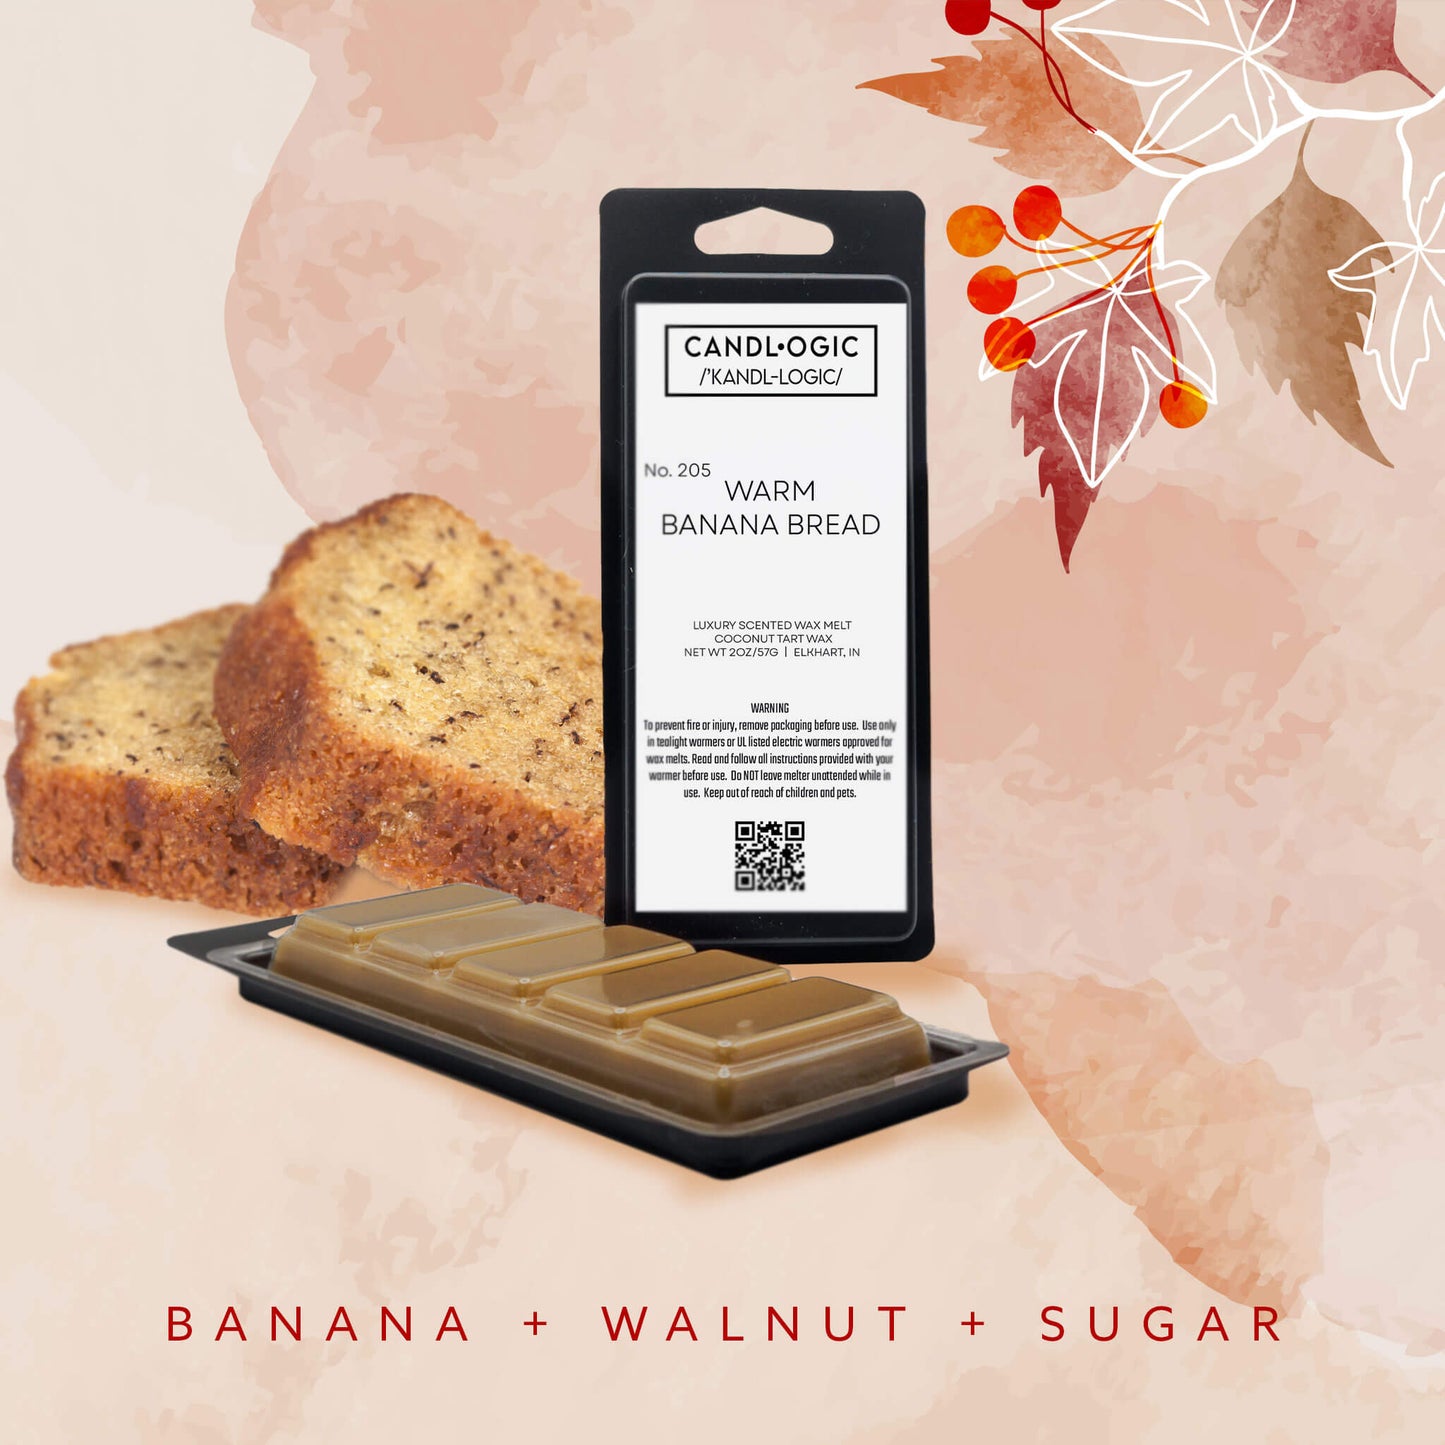 No. 205 Warm Banana Bread wax melt - Banana, Walnut & Sugar